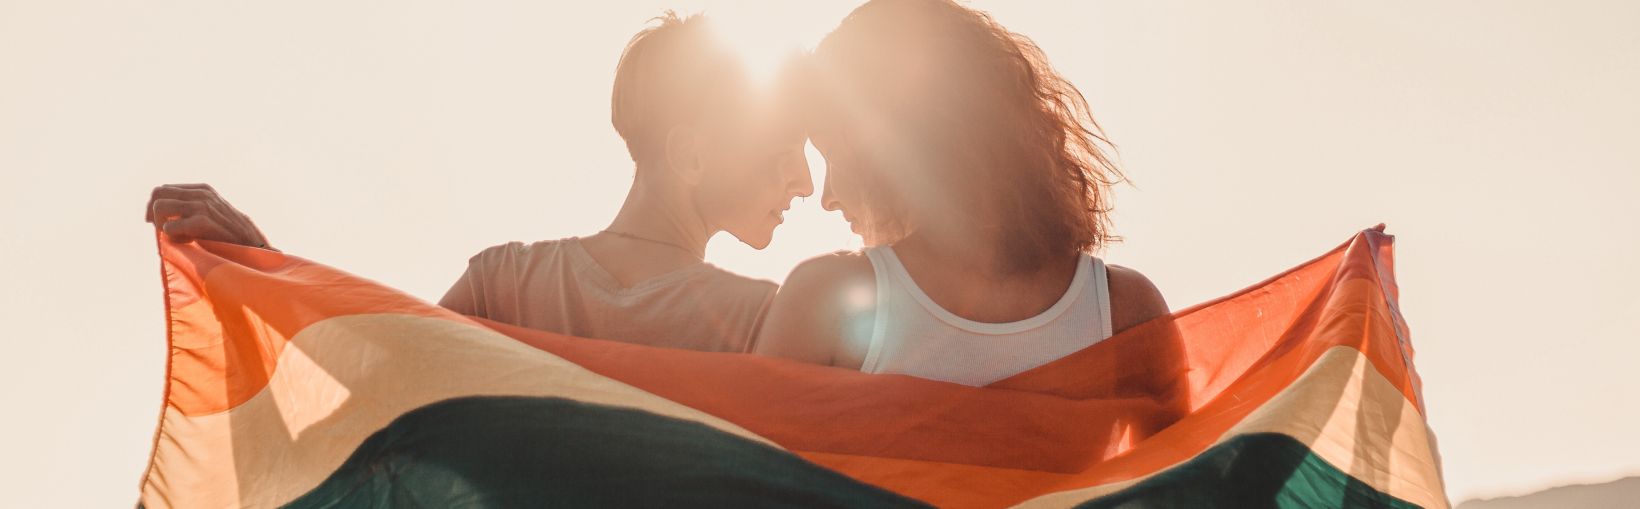 Un beau couple de jeunes lesbiennes s’embrasse tendrement et tient un drapeau arc-en-ciel, l’égalité des droits pour la communauté LGBT